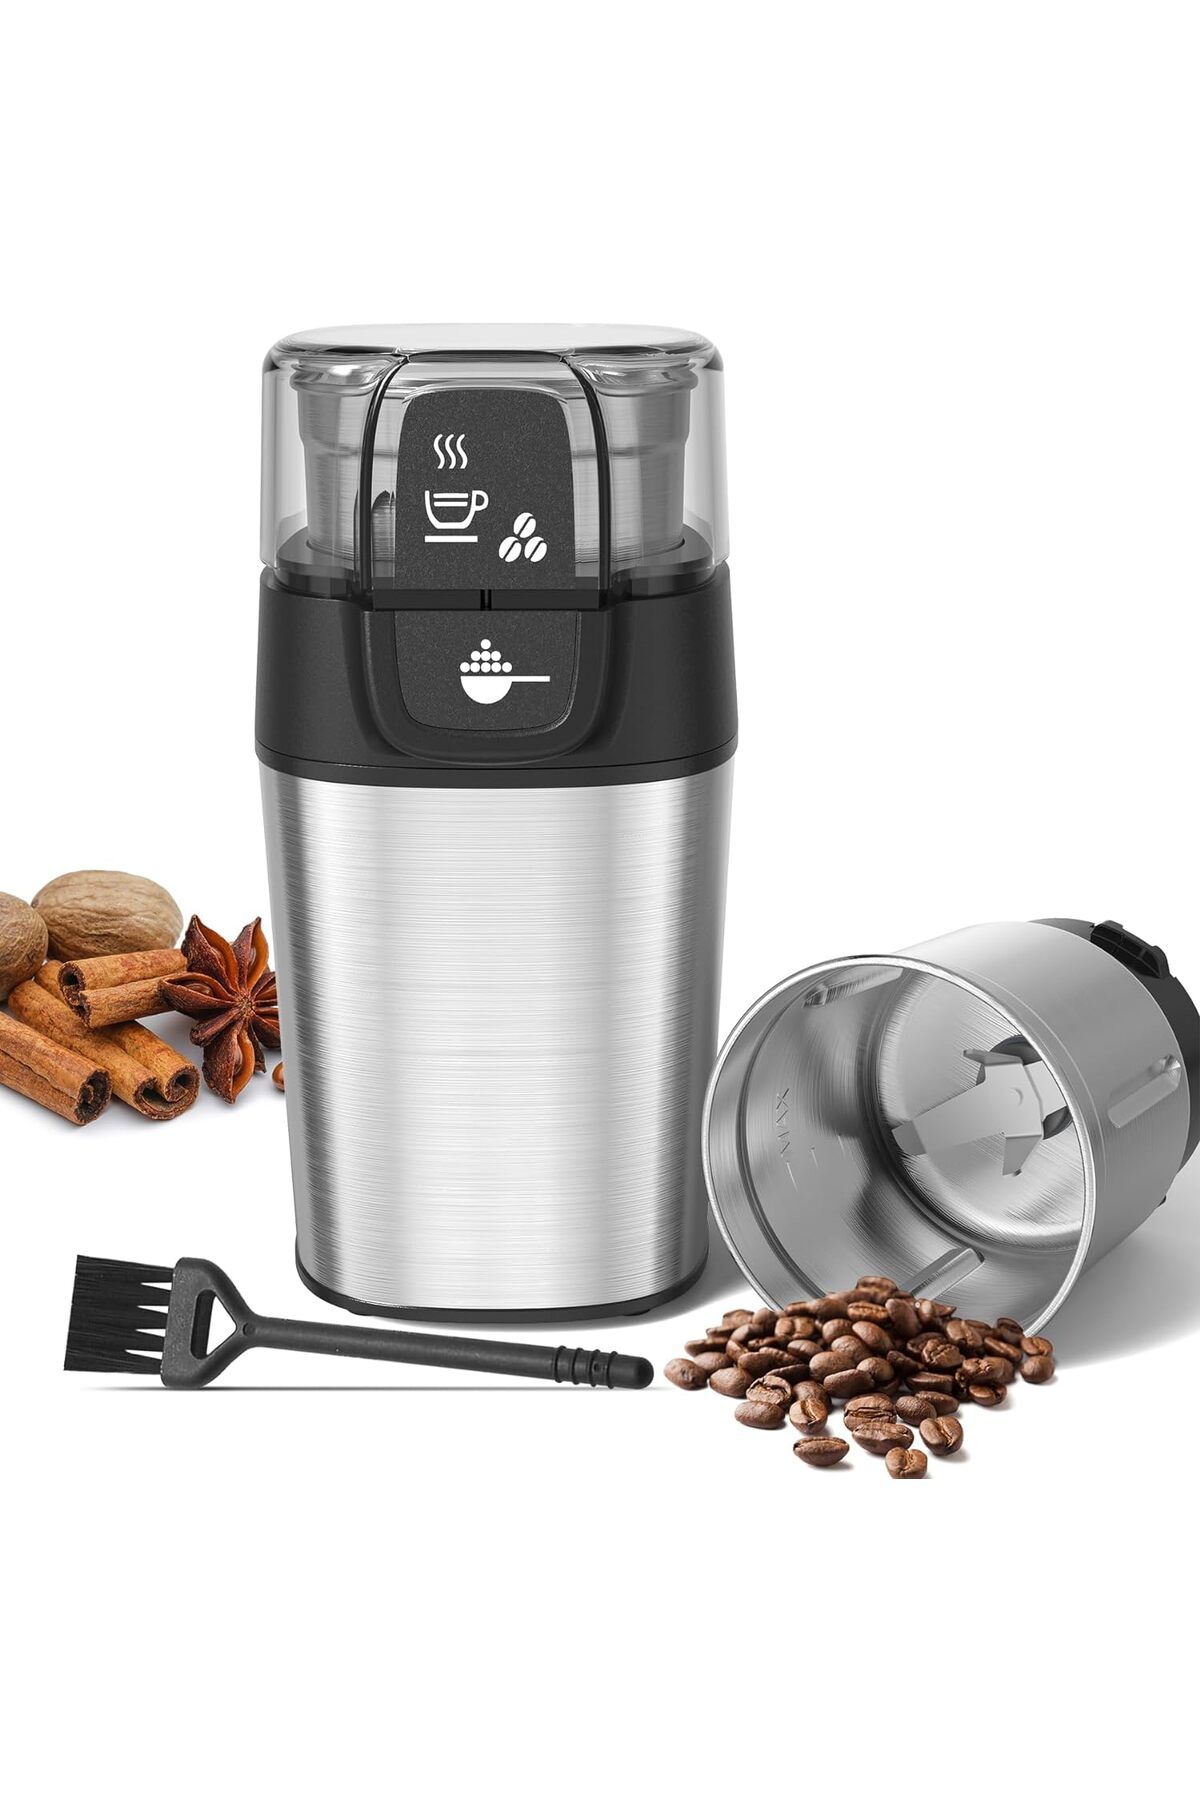 OMISOON Elektrikli Kahve Öğütücü: 70g Kapasiteli Kahve Değirmeni - Güçlü Motor, Çok İşlevli Kullanım